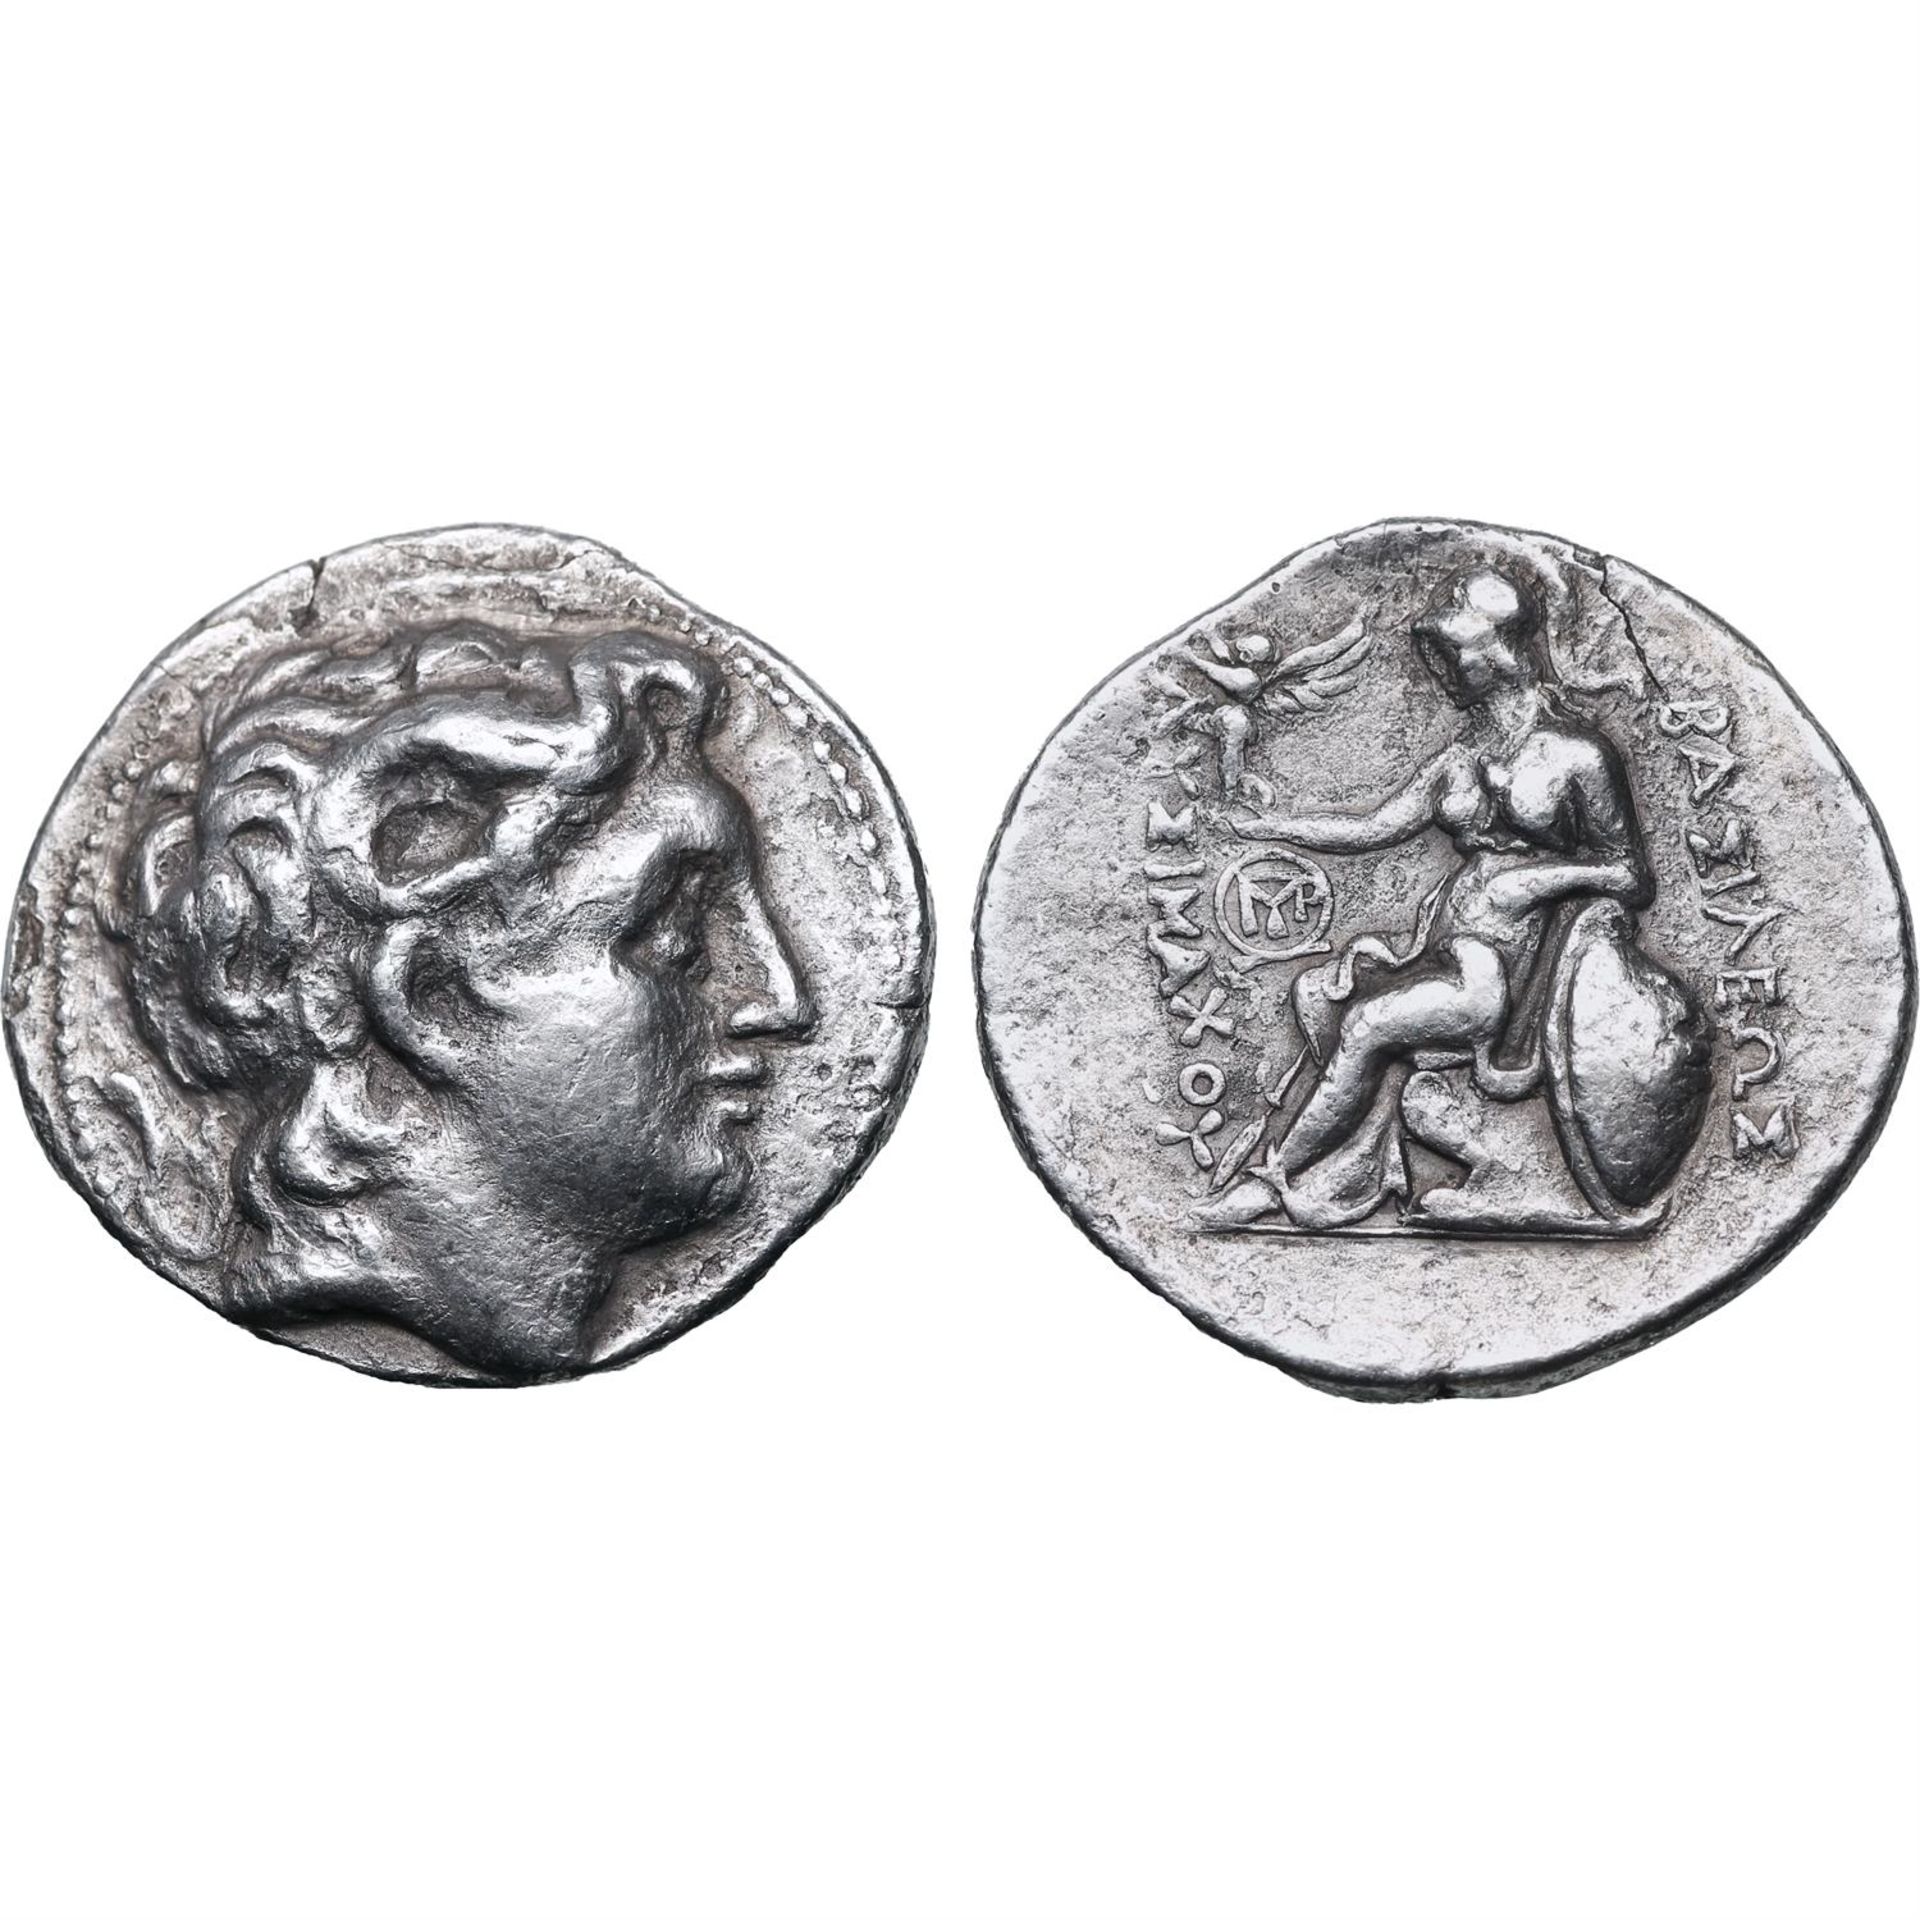 Kings of Thrace, Lysimachos AR Tetradrachm.